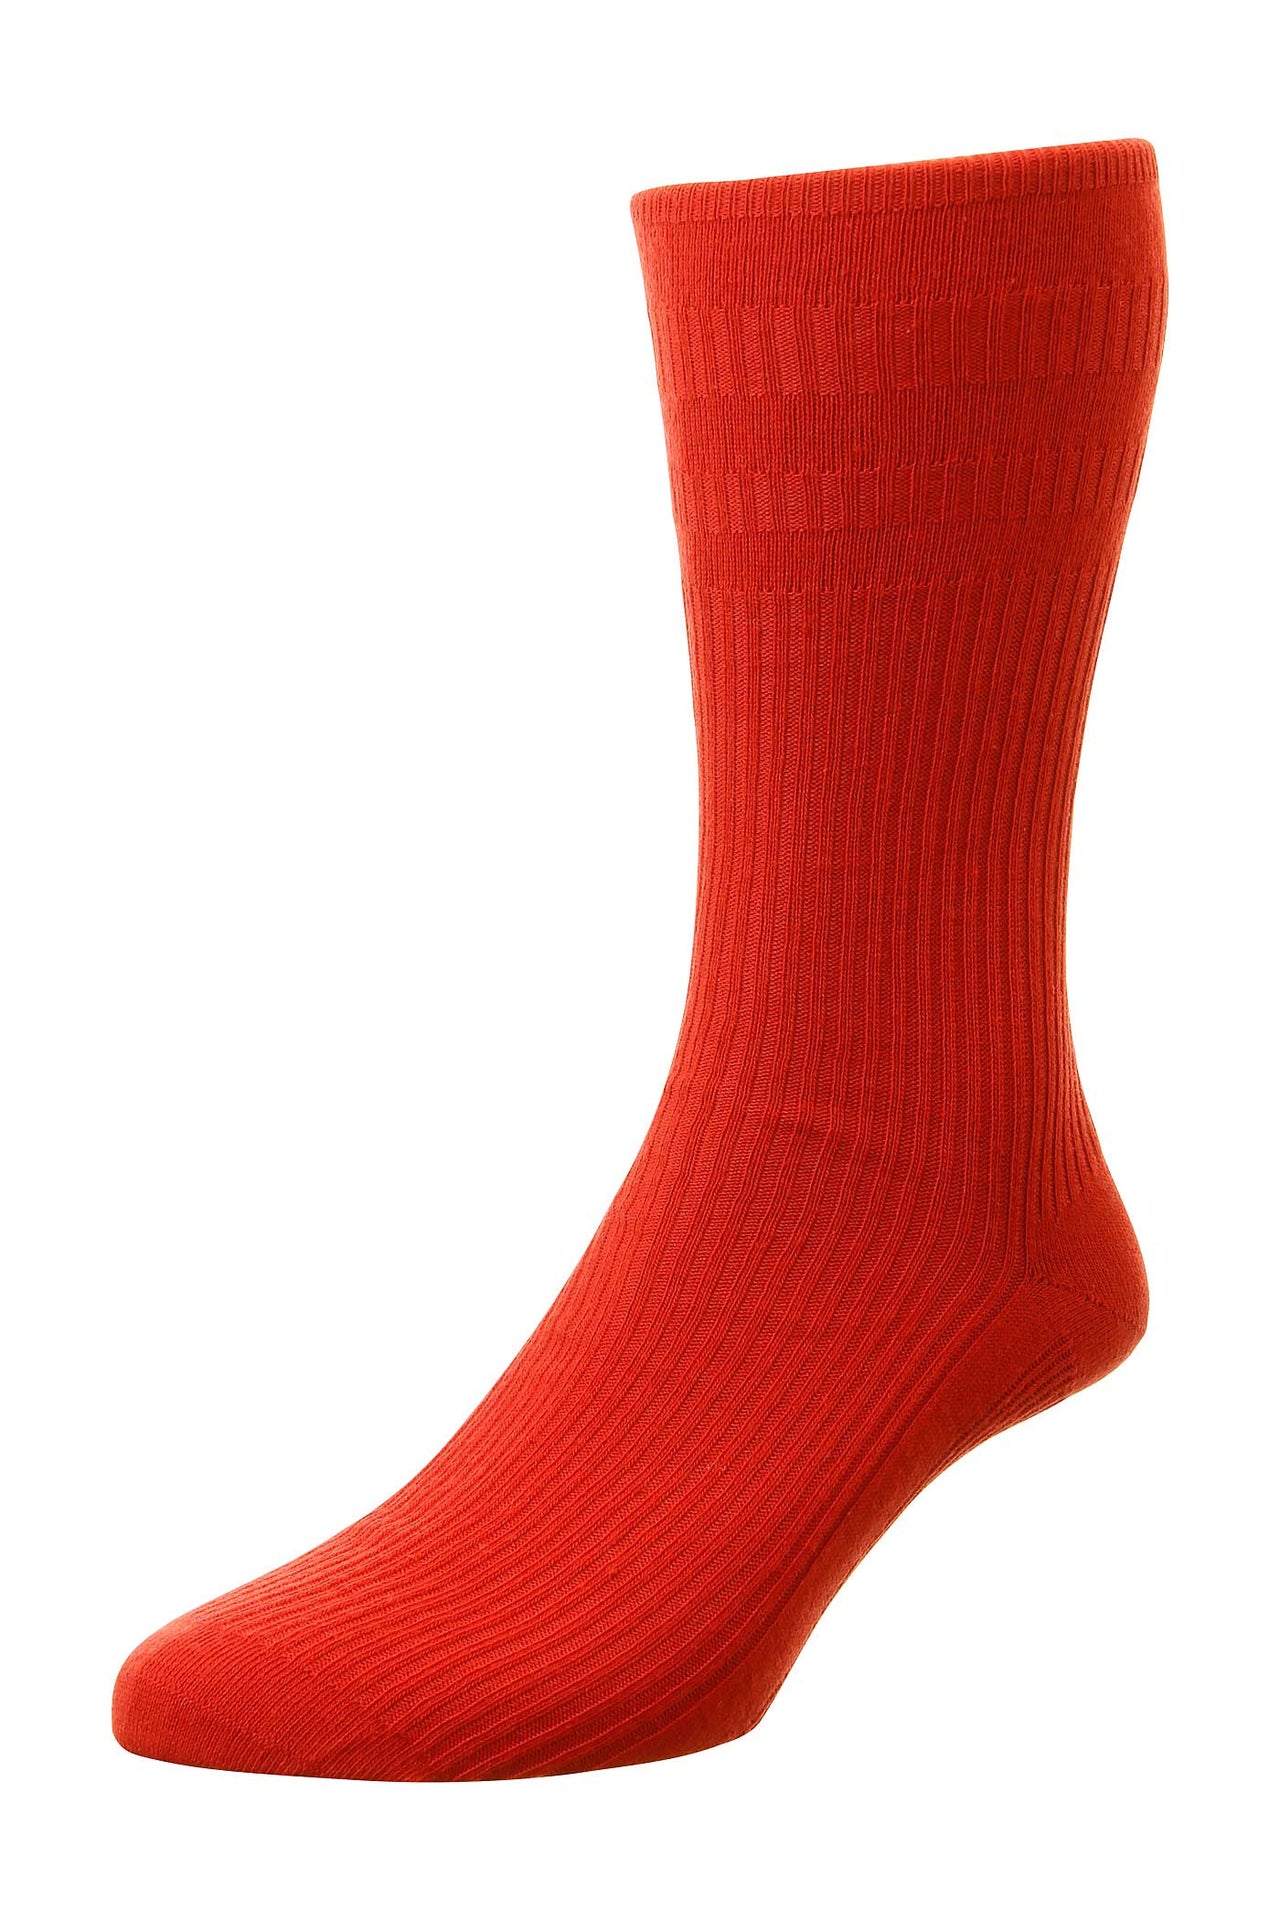 HJ Hall Red Cotton Socksh